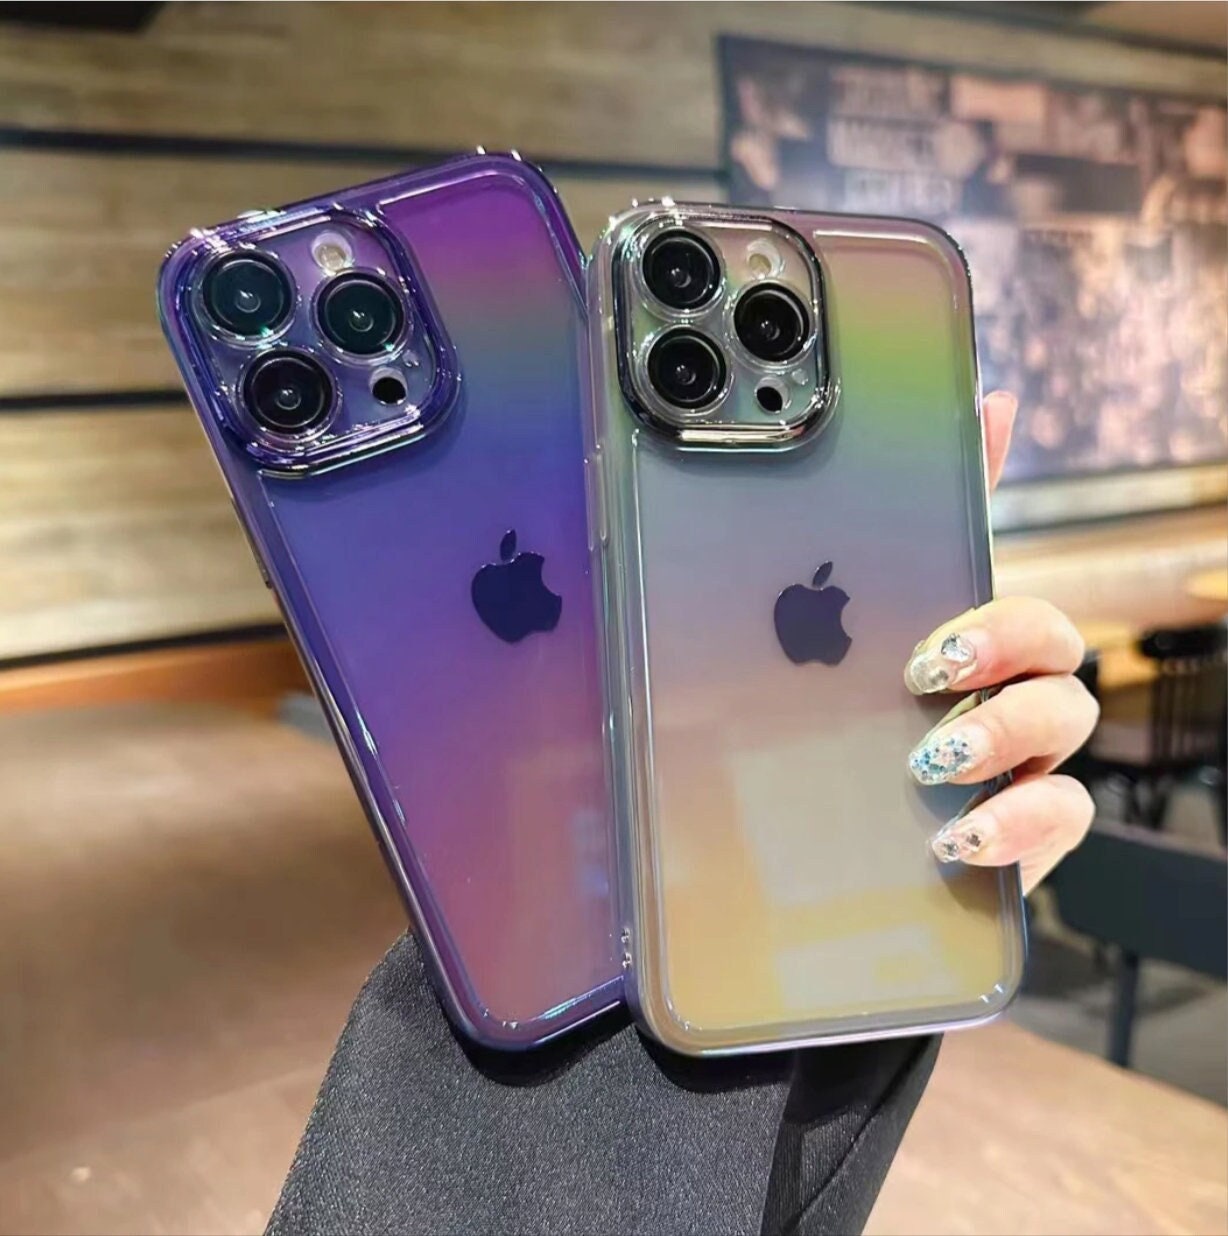 Coverlab iPhone 7 Plus Case, iPhone 8 Plus Case, Glitter Cute Phone Case Girls